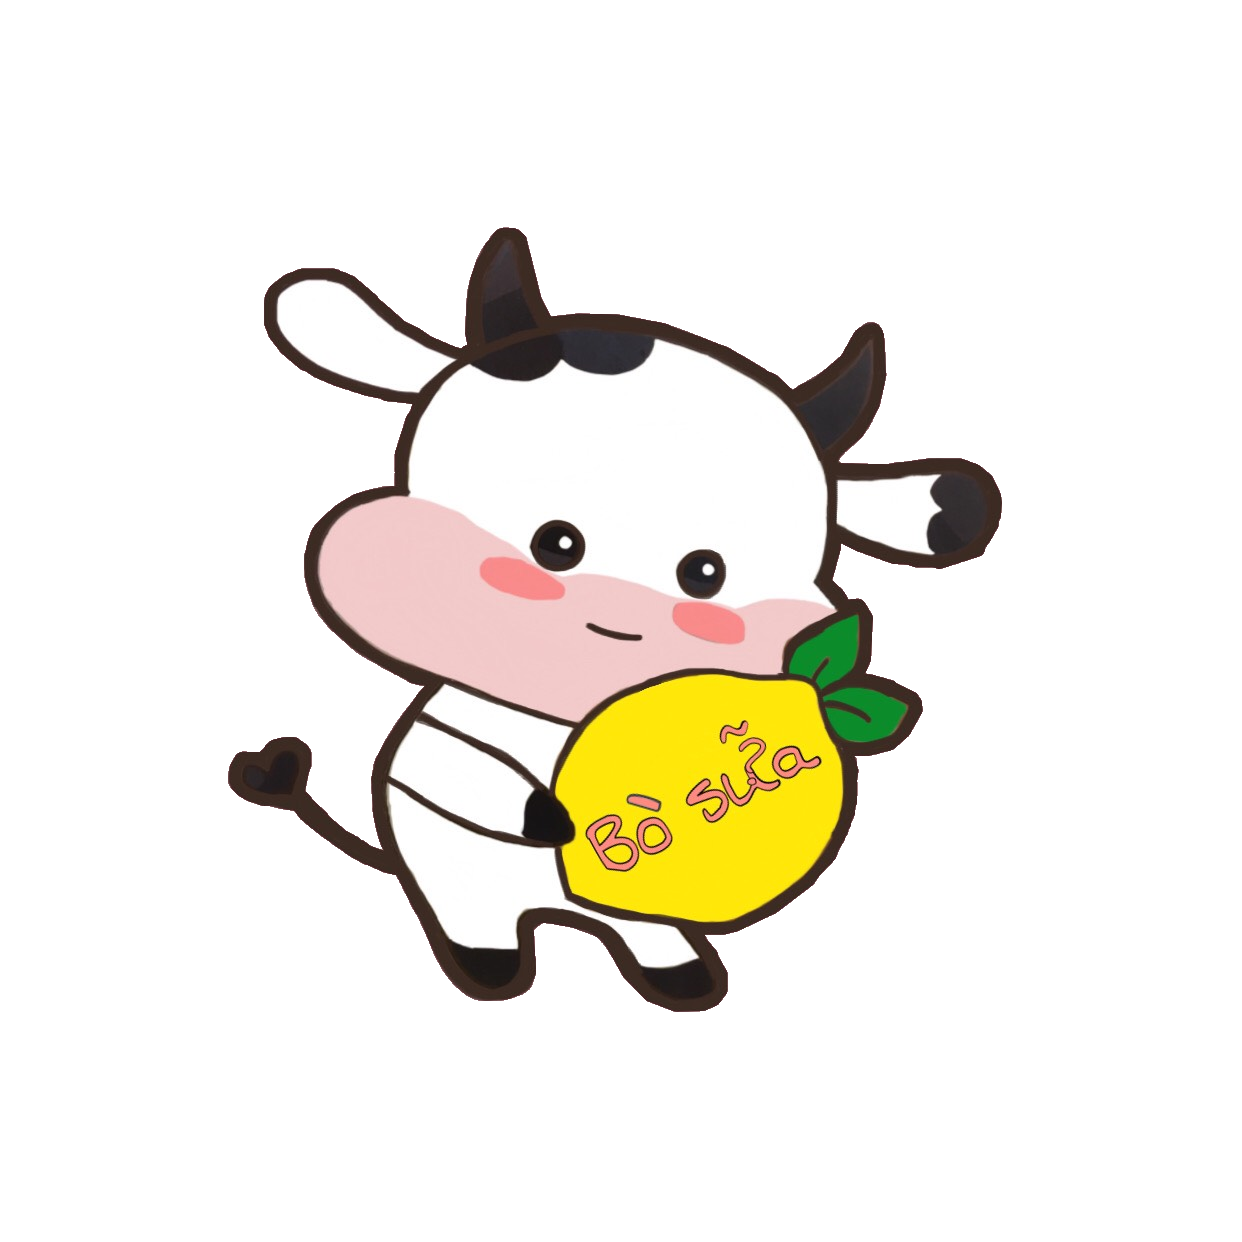 Sticker Washi Bò sữa cute 2024 làm bạn muốn sở hữu ngay lập tức. Chúng sẽ tạo ra một phong cách trẻ trung và năng động cho tất cả các đồ vật của bạn, từ sổ tay đến laptop. Hãy để những chú bò sữa chibi cute làm cho ngày của bạn trở nên đầy màu sắc!